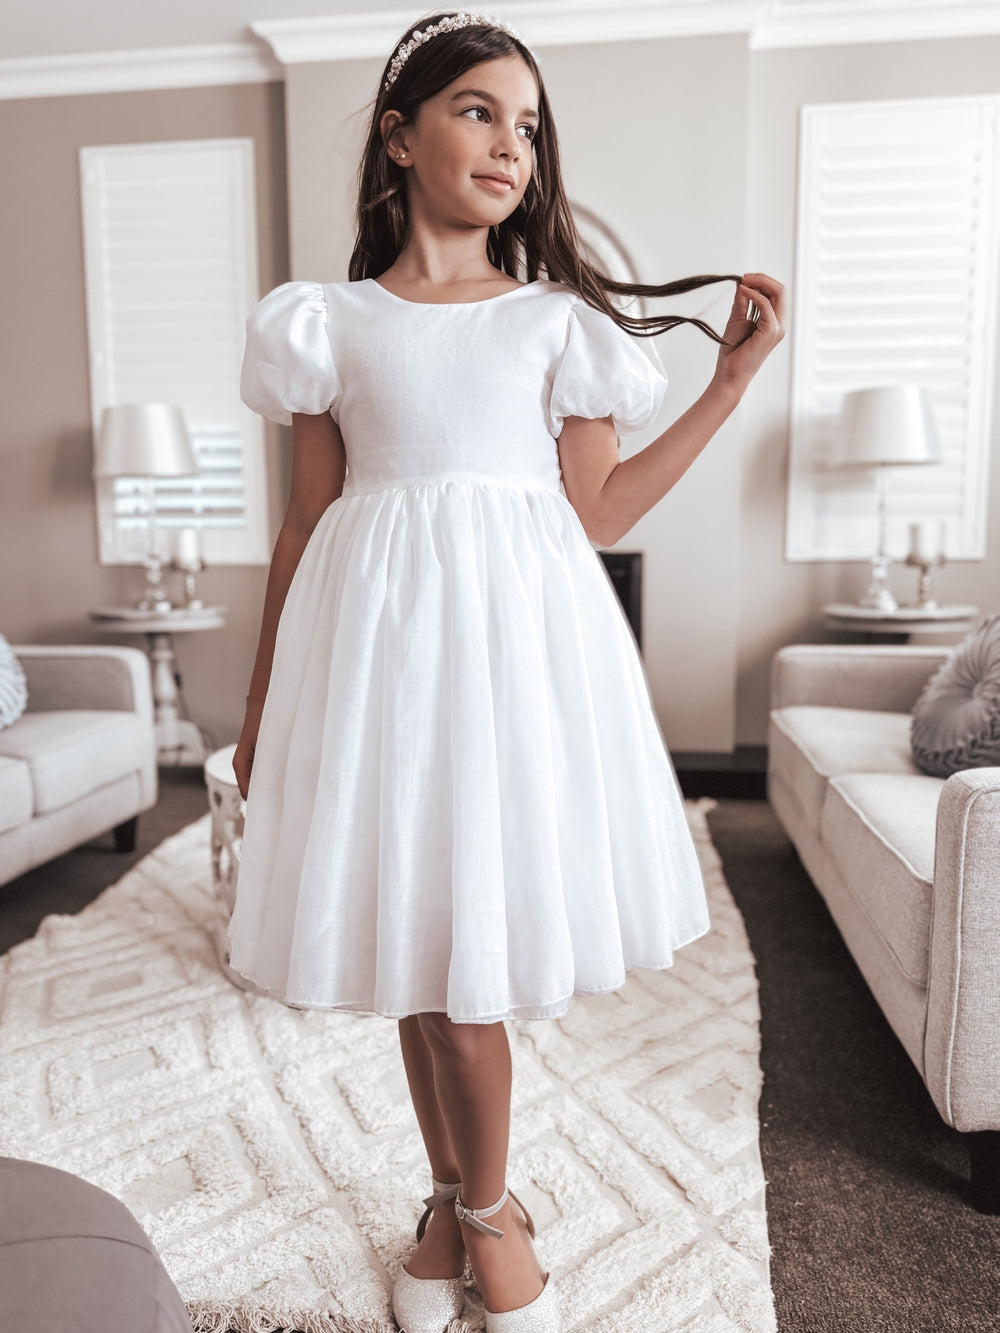 Delia Girls White Dress - Girls White Dresses